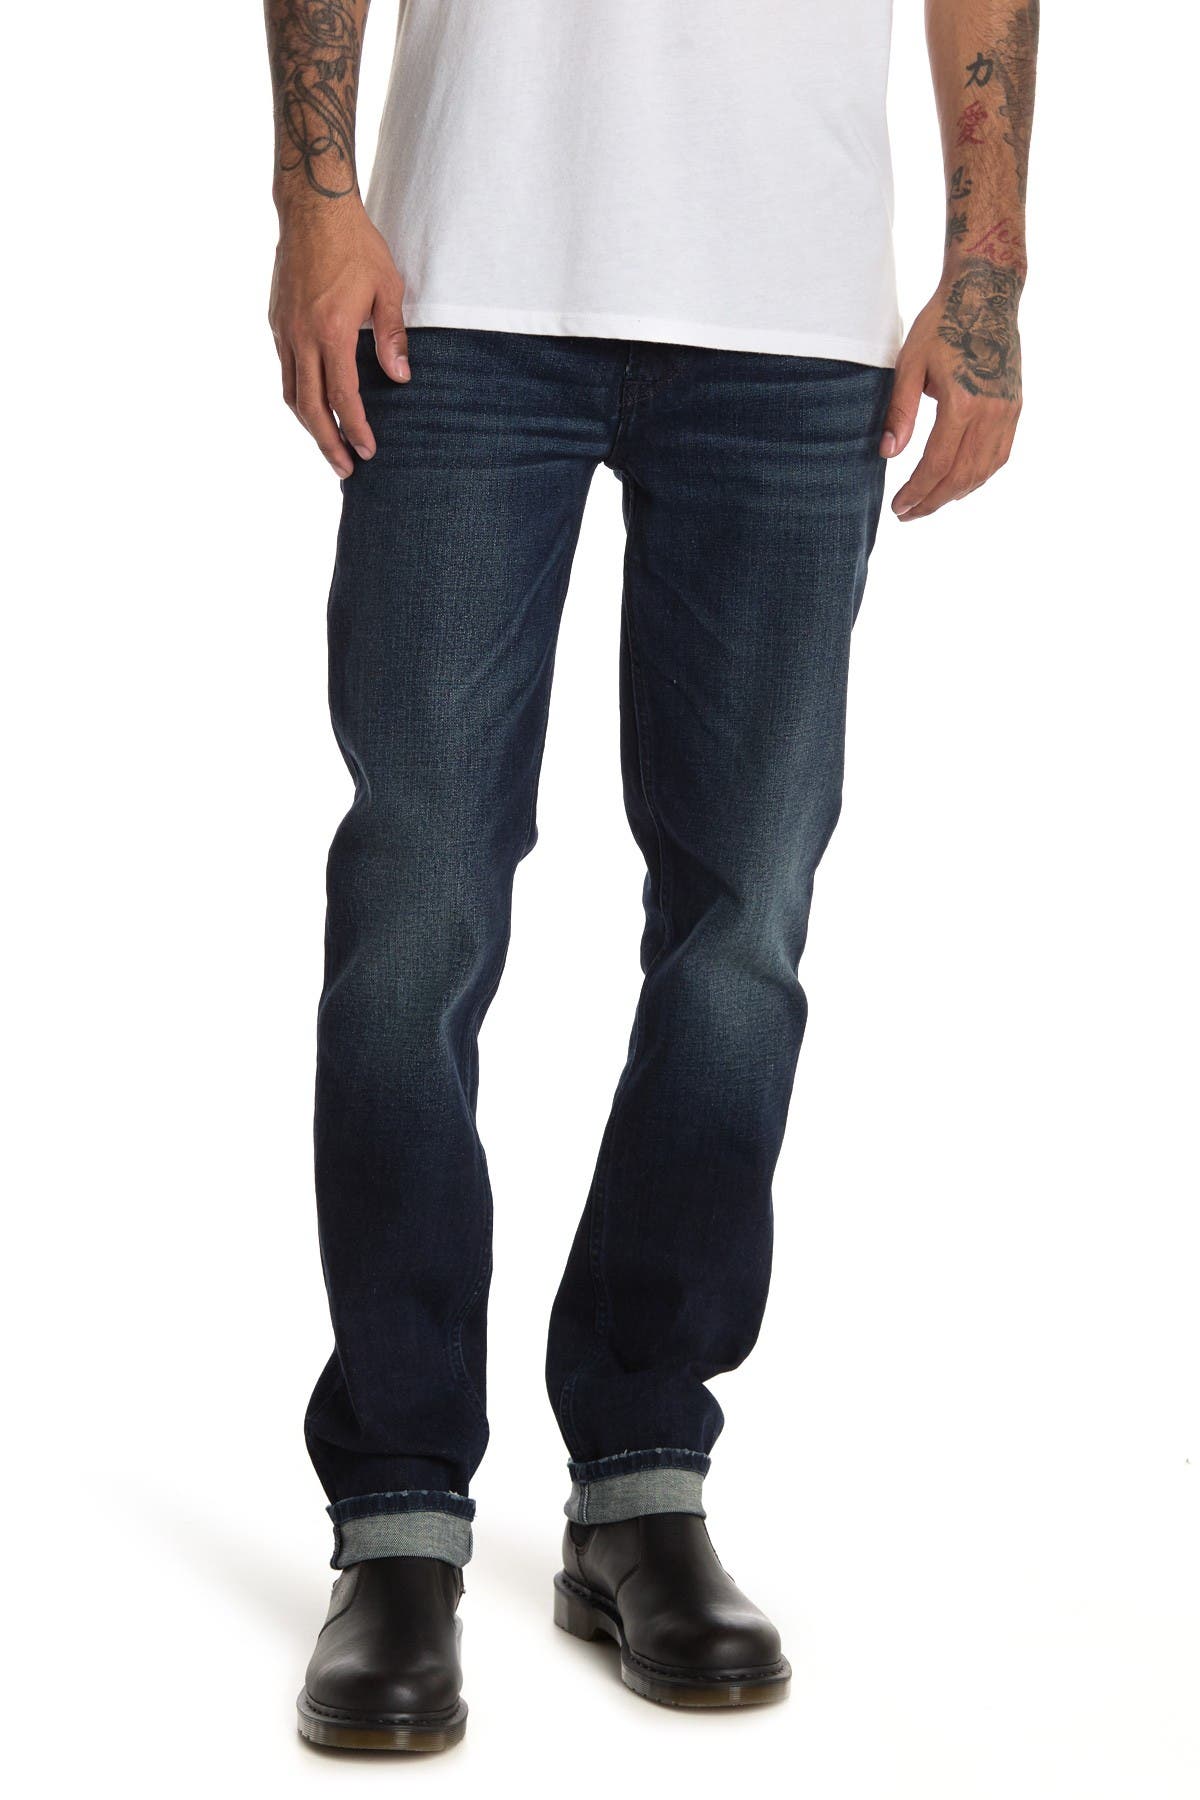 nordstrom mens jeans sale